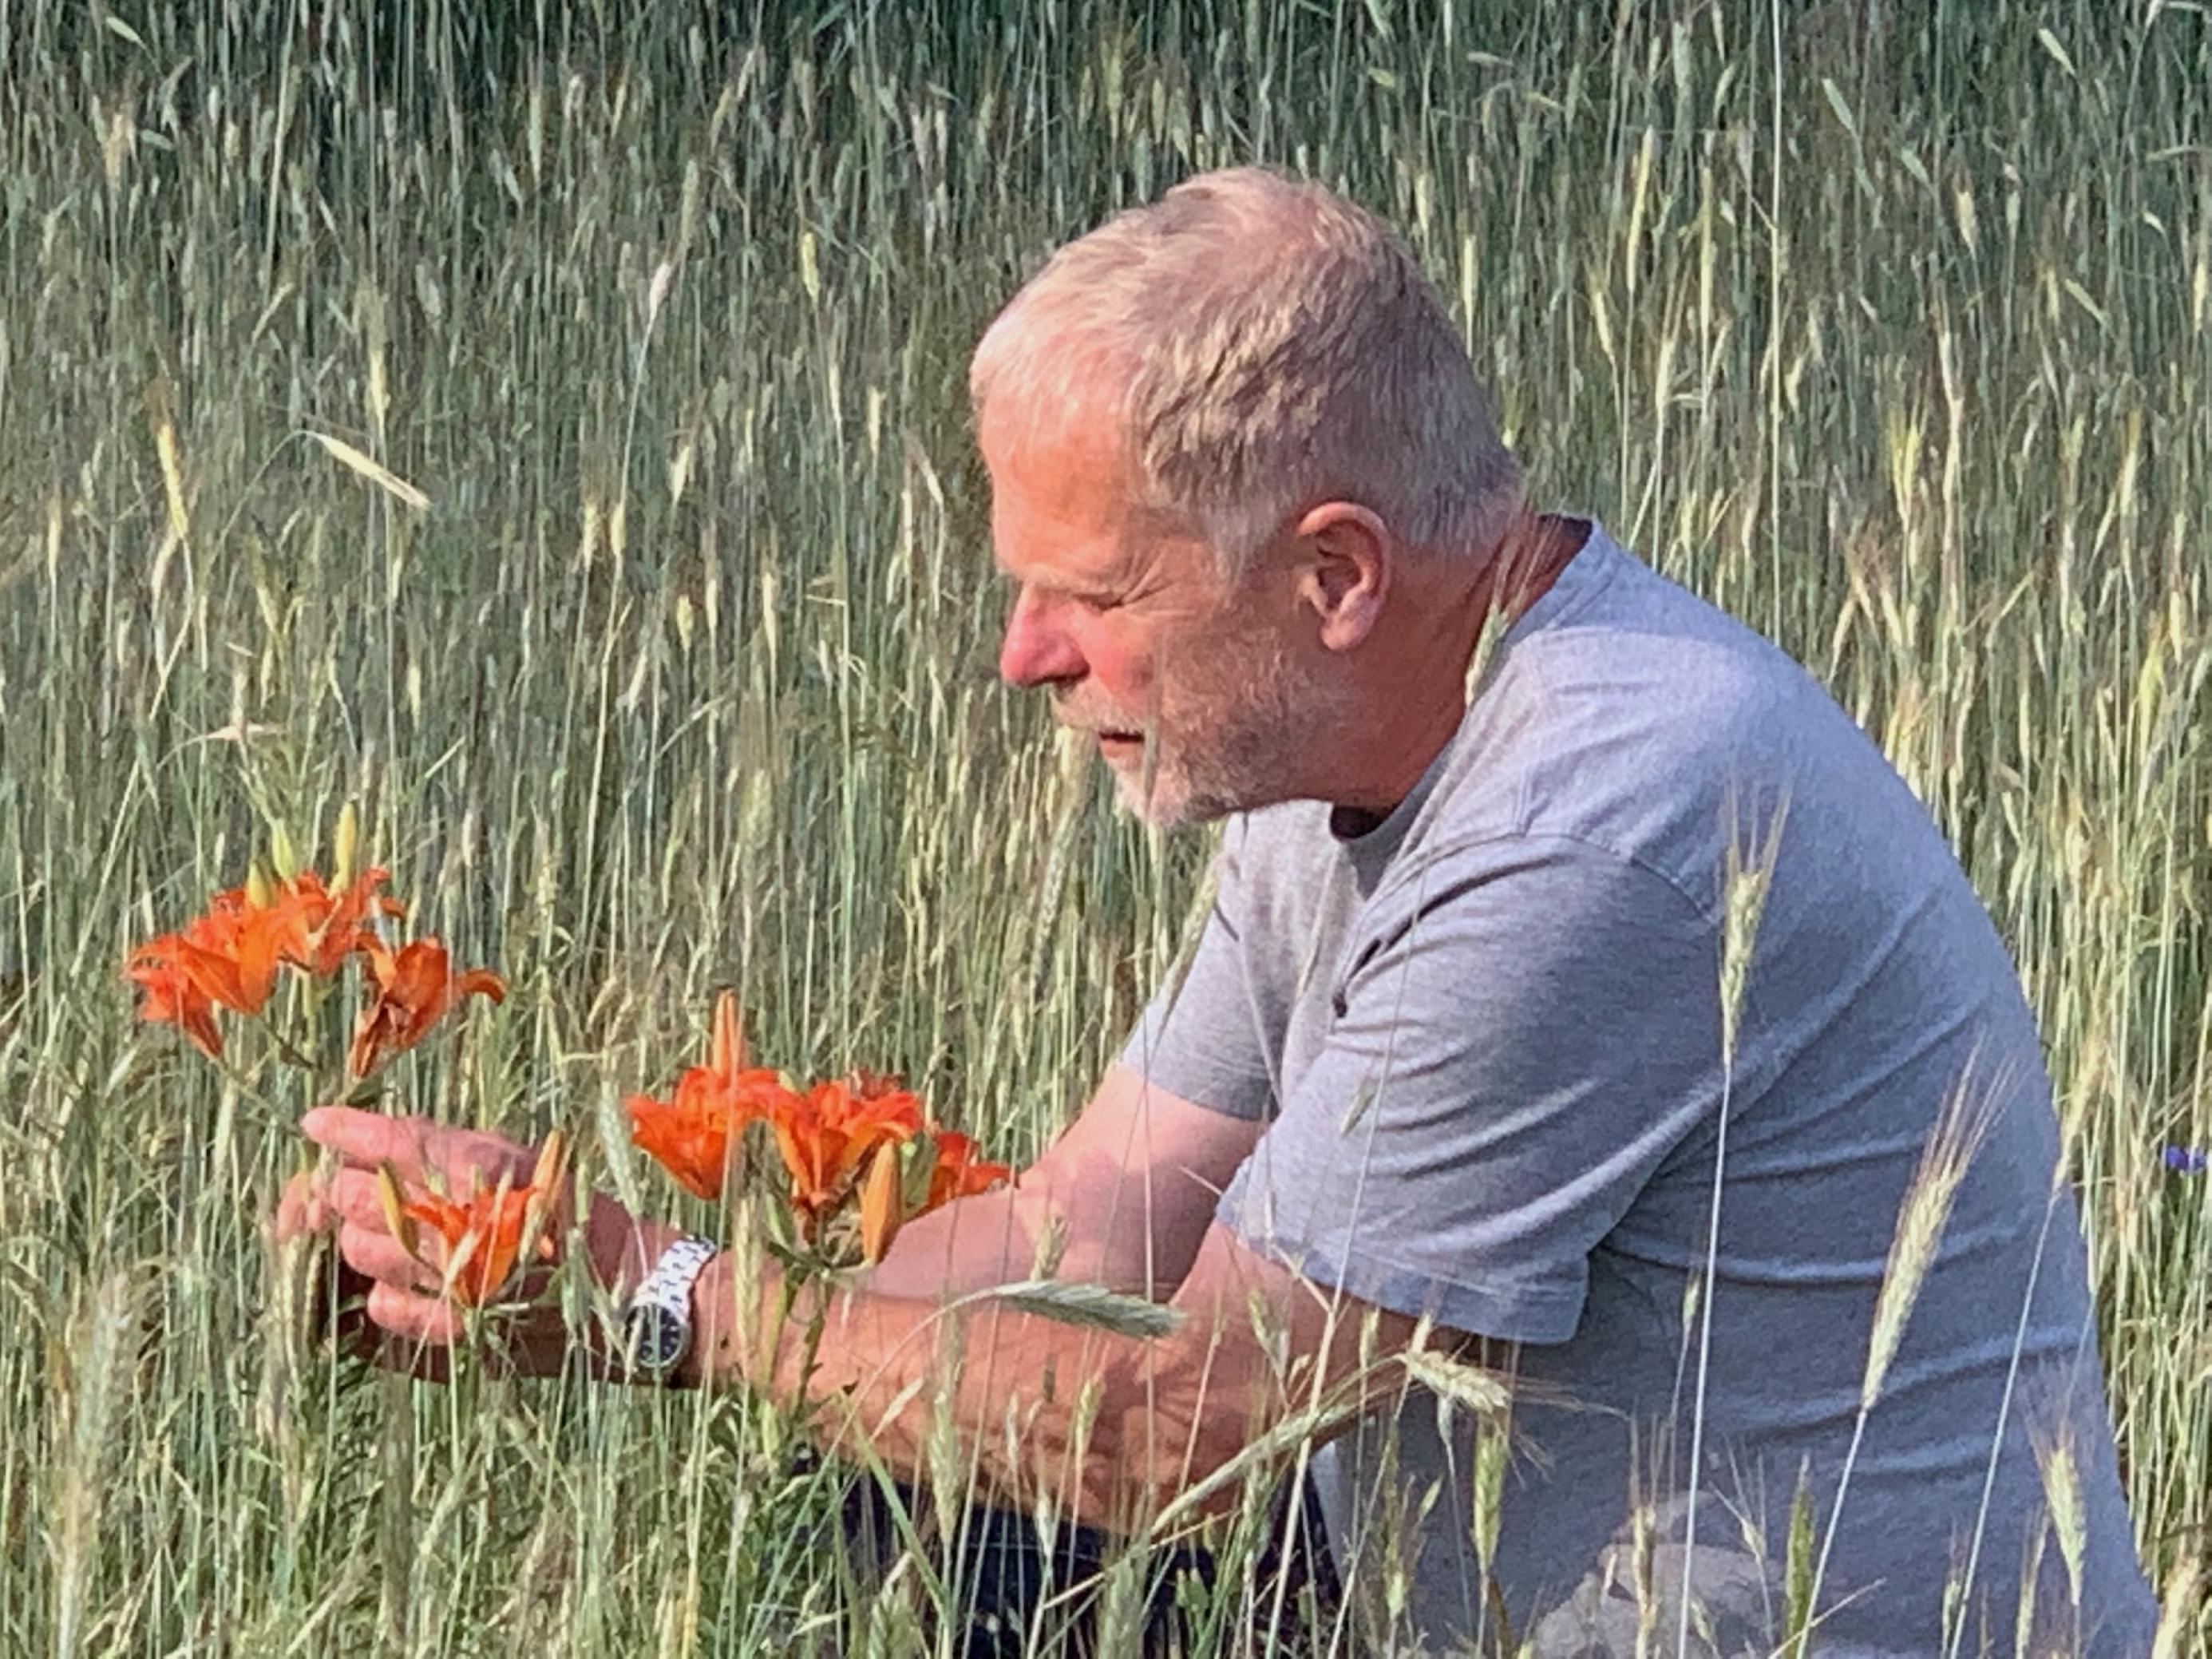 Mann hockt auf dem Boden zwischen Getreidehalmen, die Hände um eine Lilienblüte gelegt